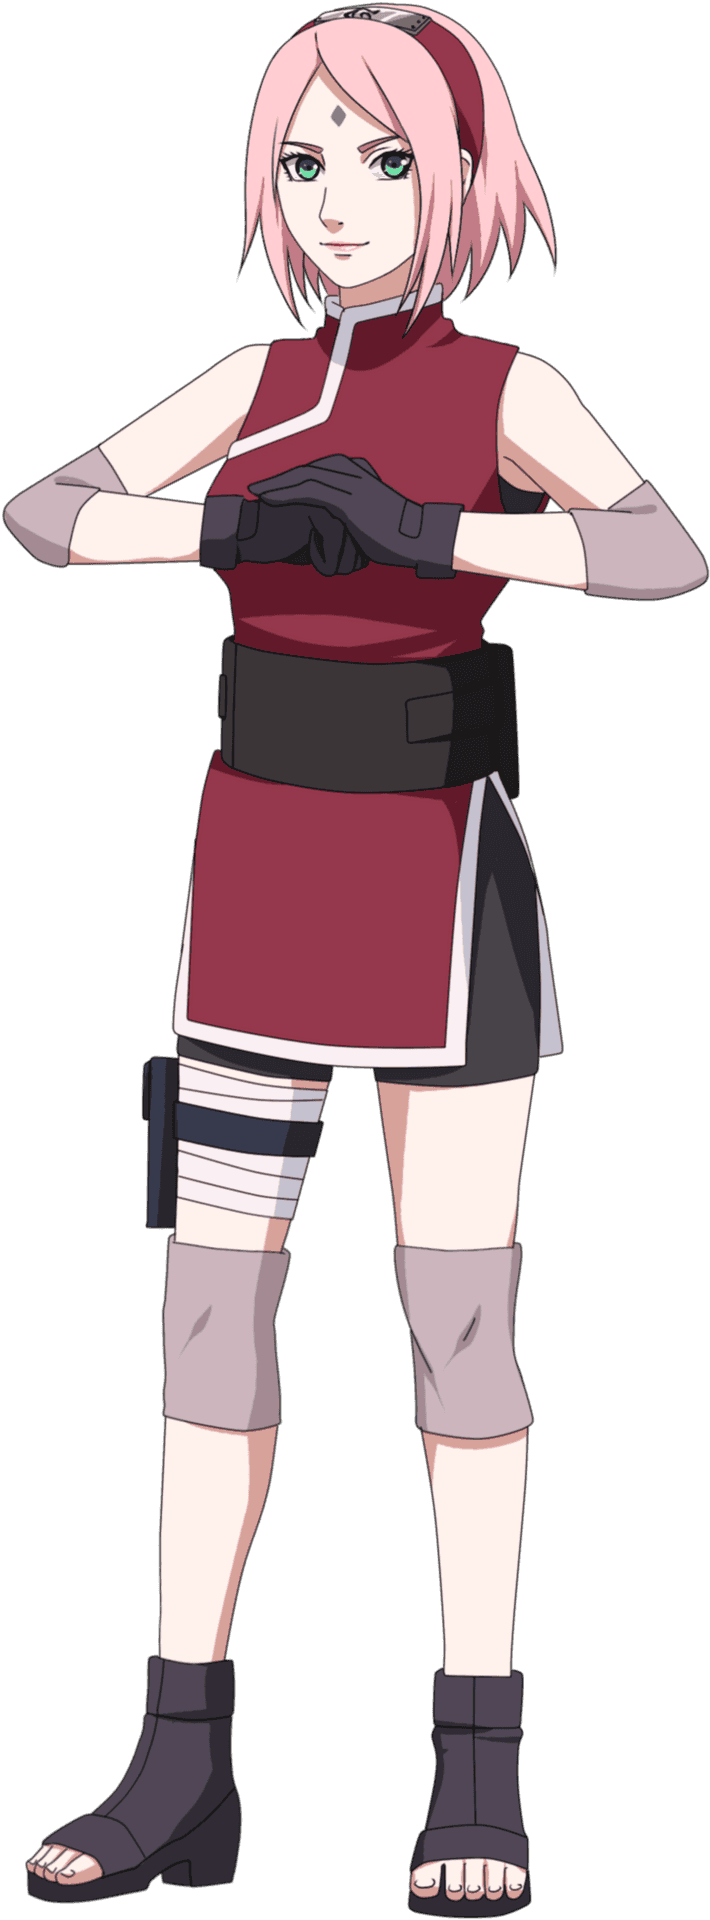 Anime Ninja Girl Standing Pose PNG image